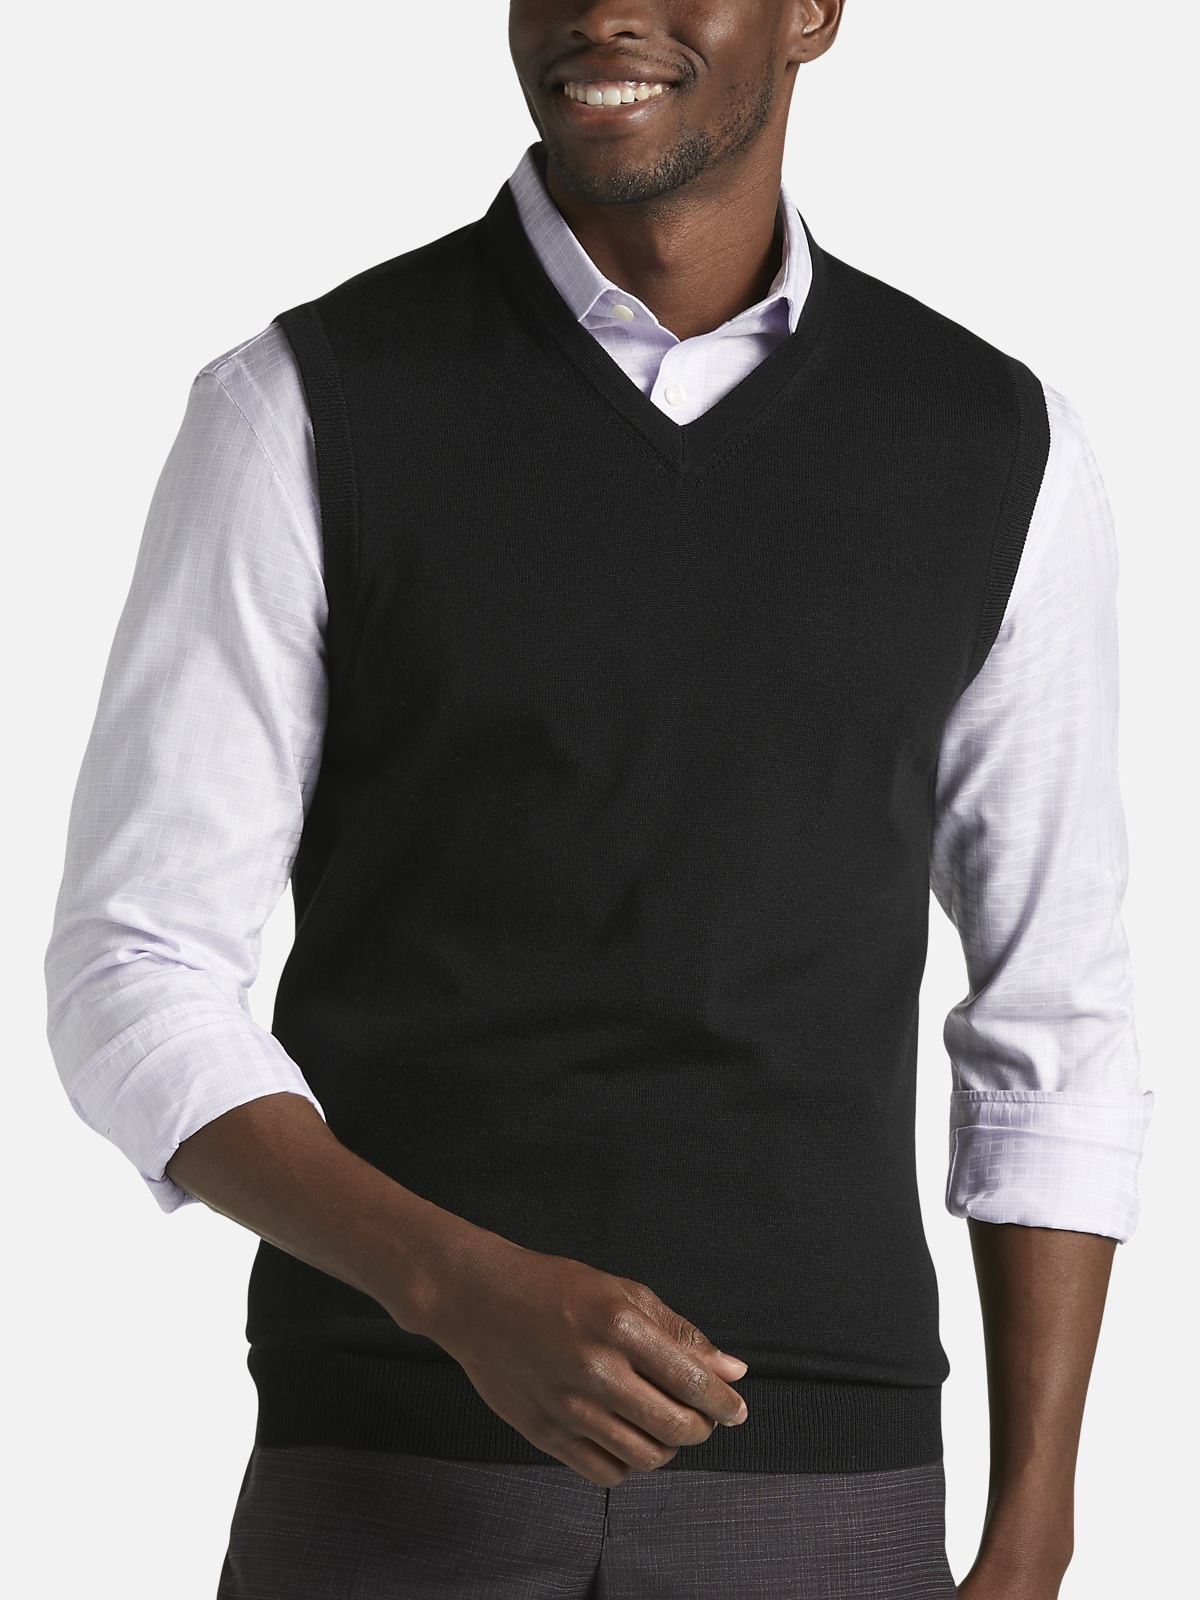 Joseph Abboud Modern Fit Merino Wool Vest | All Sale| Men's Wearhouse